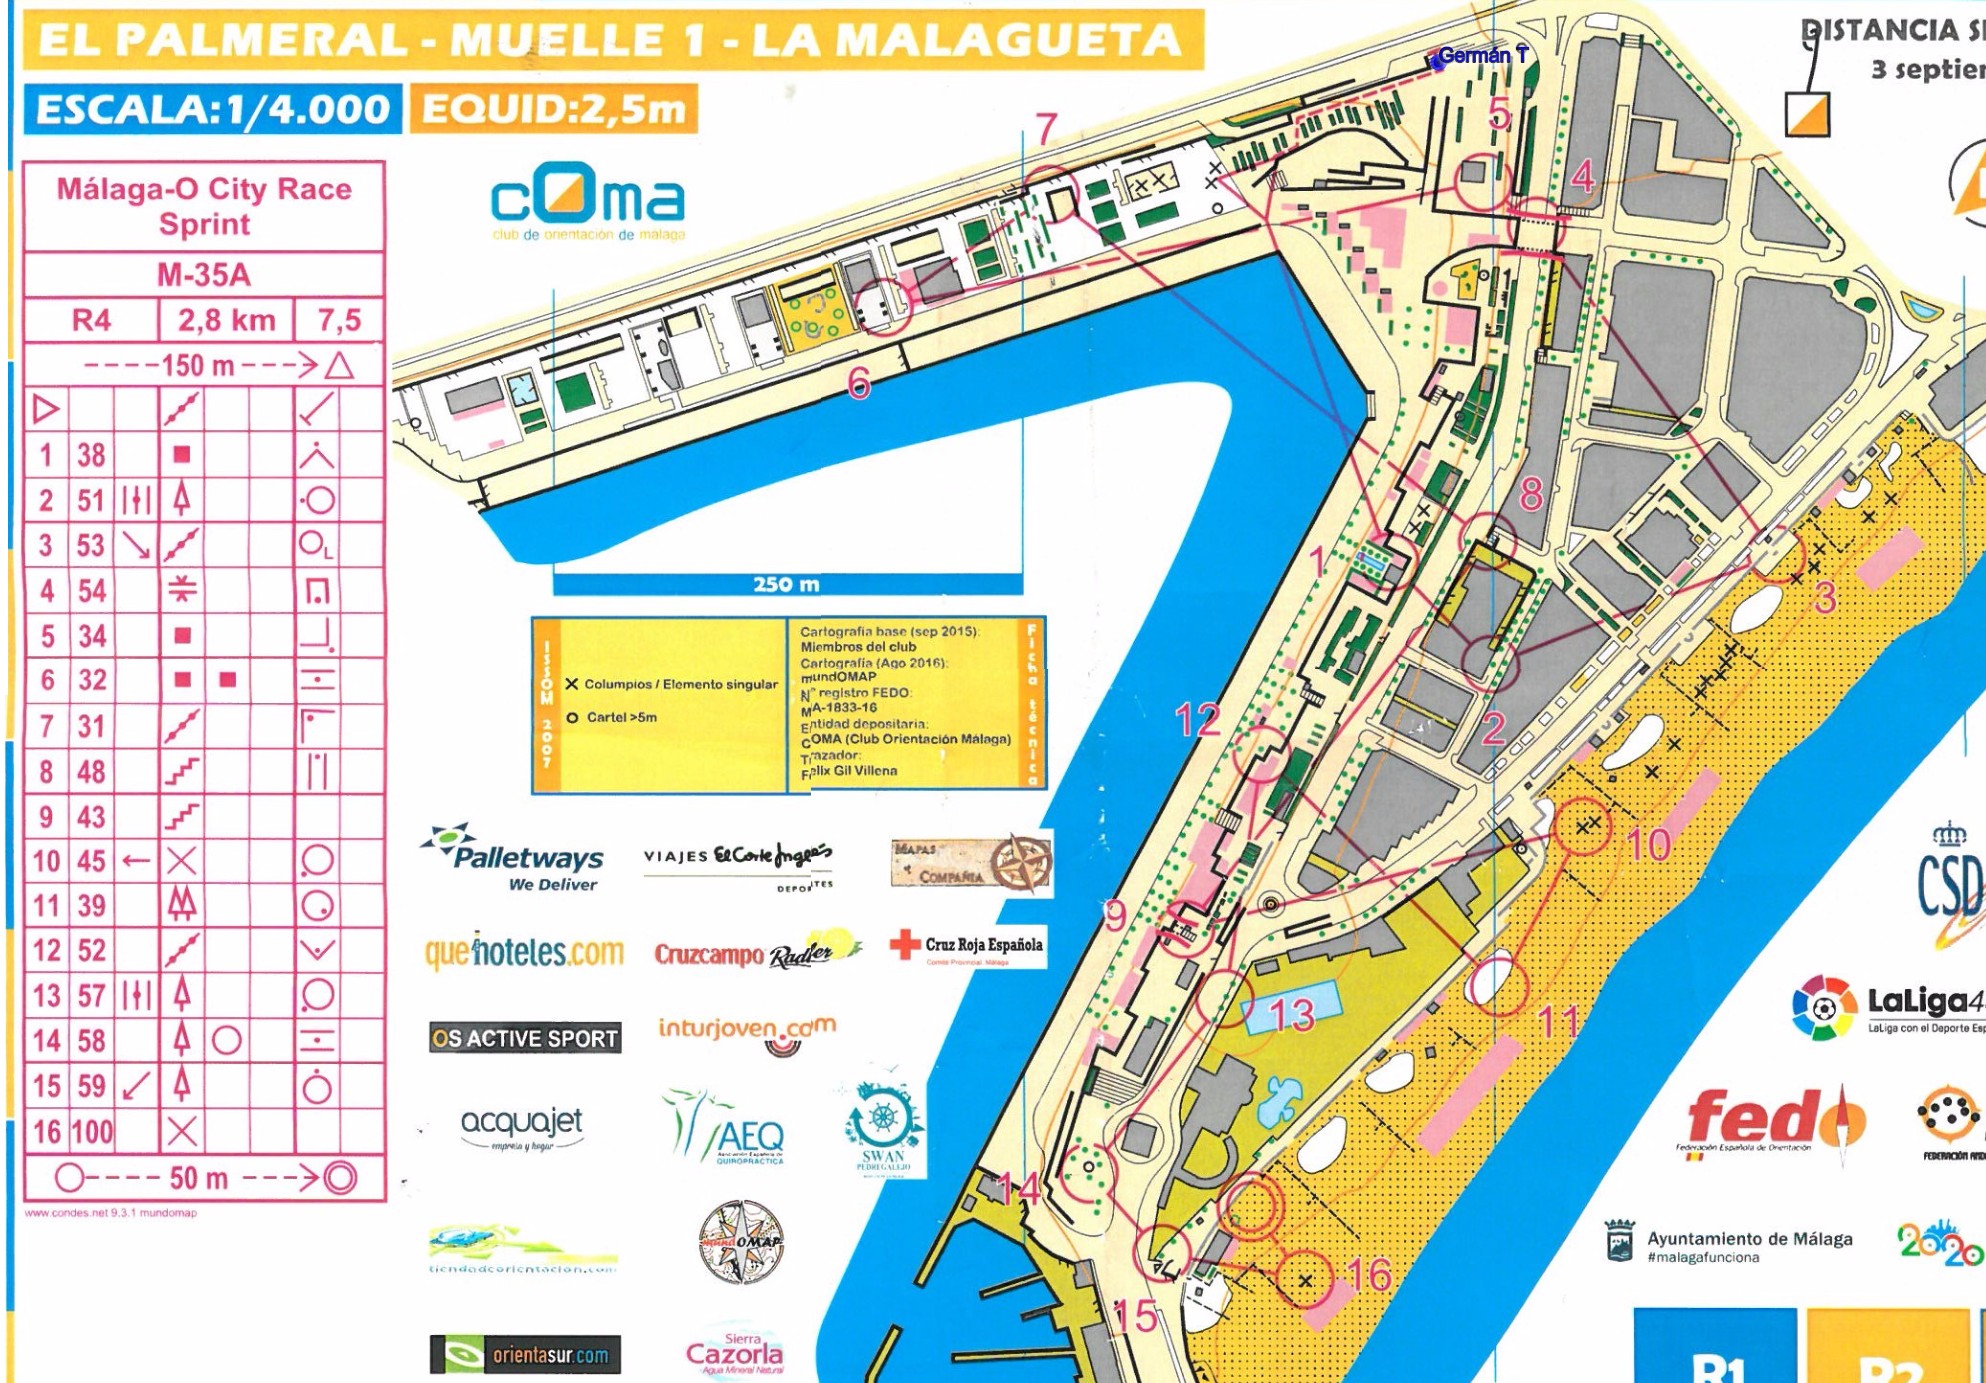 Malaga City Race - old route E2 (02/05/2017)